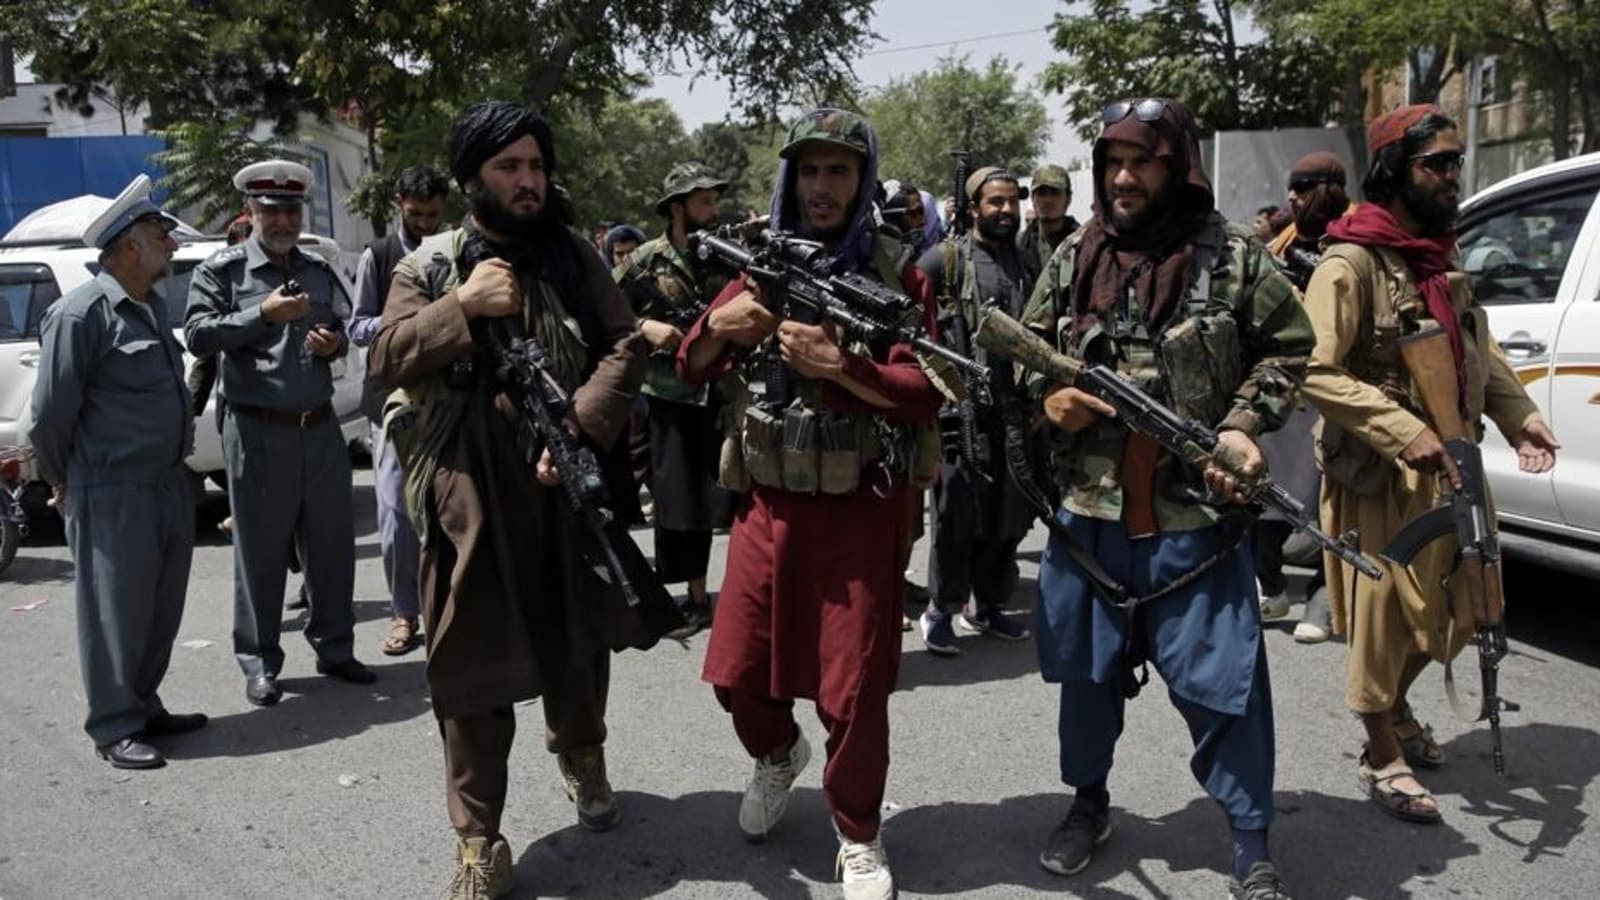 Al-Qaeda has called Taliban to come forward Kashmir